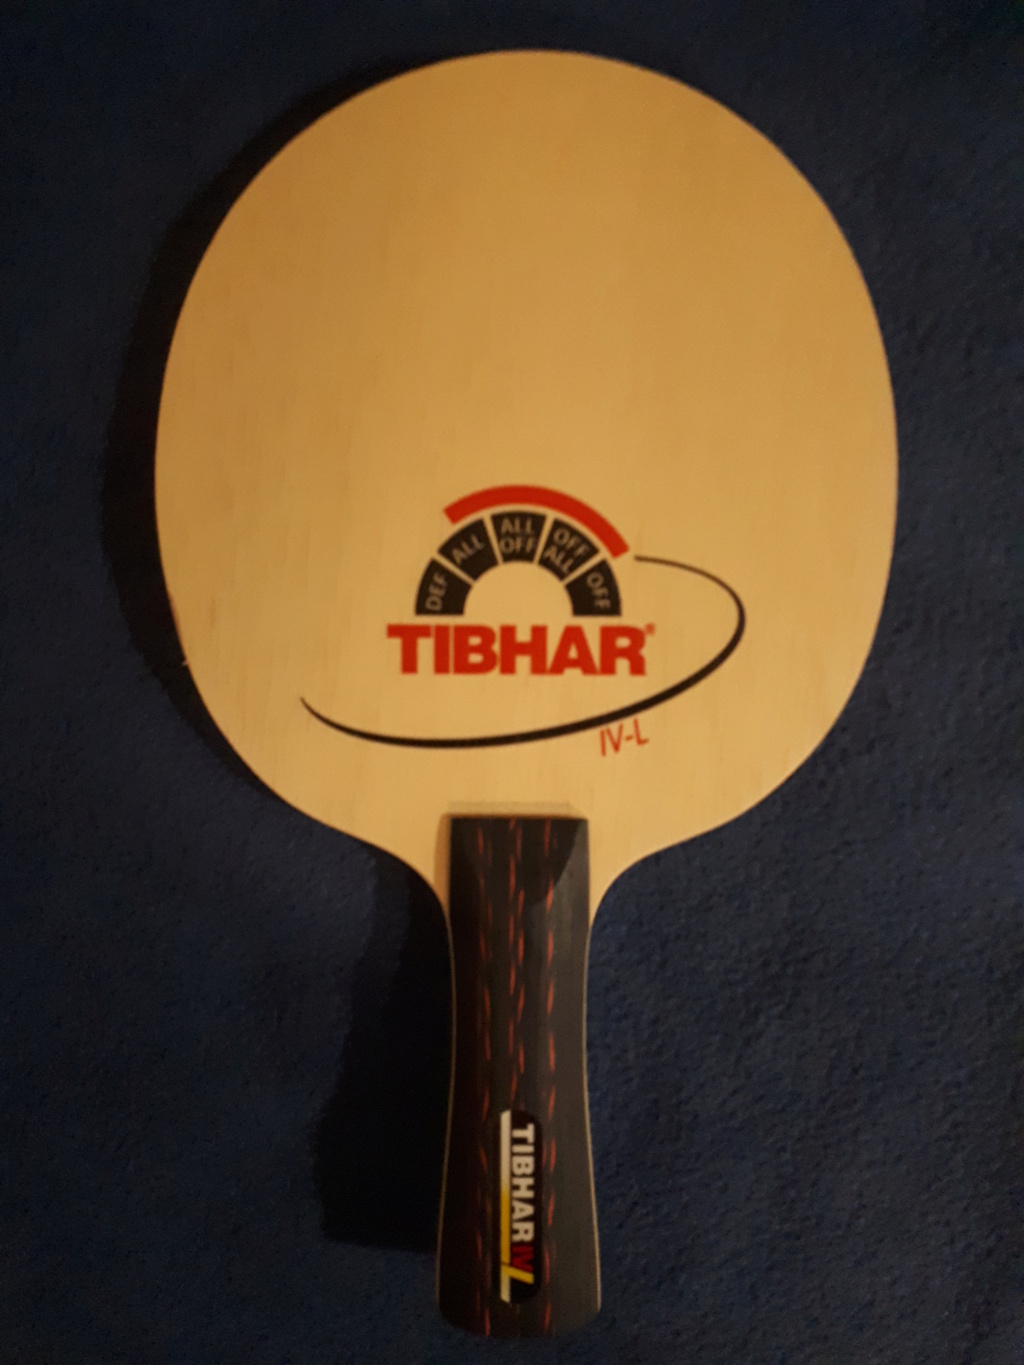 Tibhar IV L, concave, neuf, jamais joué, léger 83g, 22€ fdpi 20220116